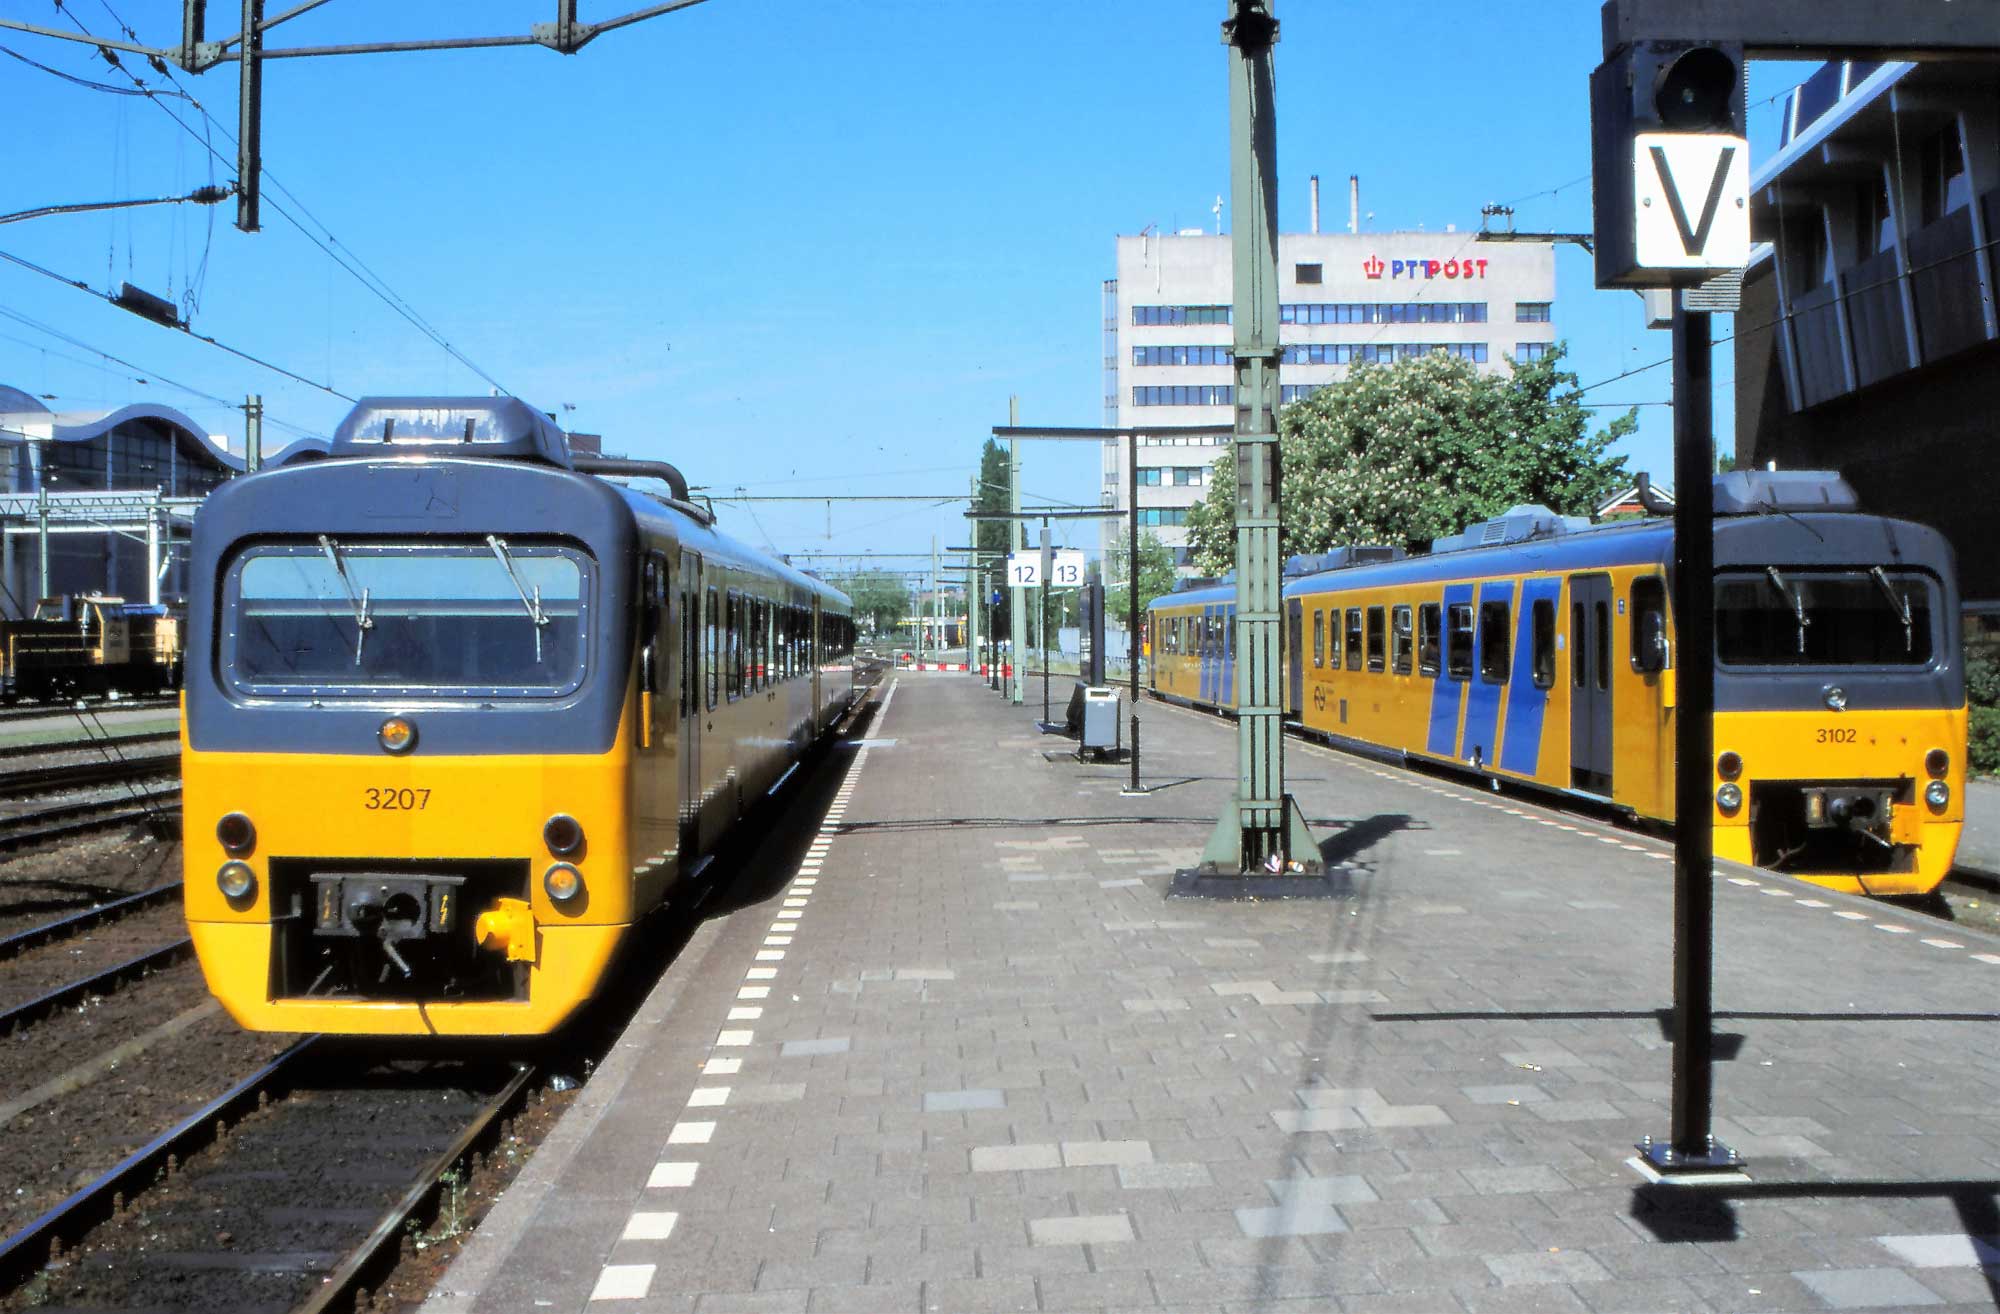 5. Zwolle mei 2000, links Wadloper DH 3207 gereed voor vertrek naar Kampen, rechts als reserve DH 3102 + 3103  (foto Frank van der Moolen).